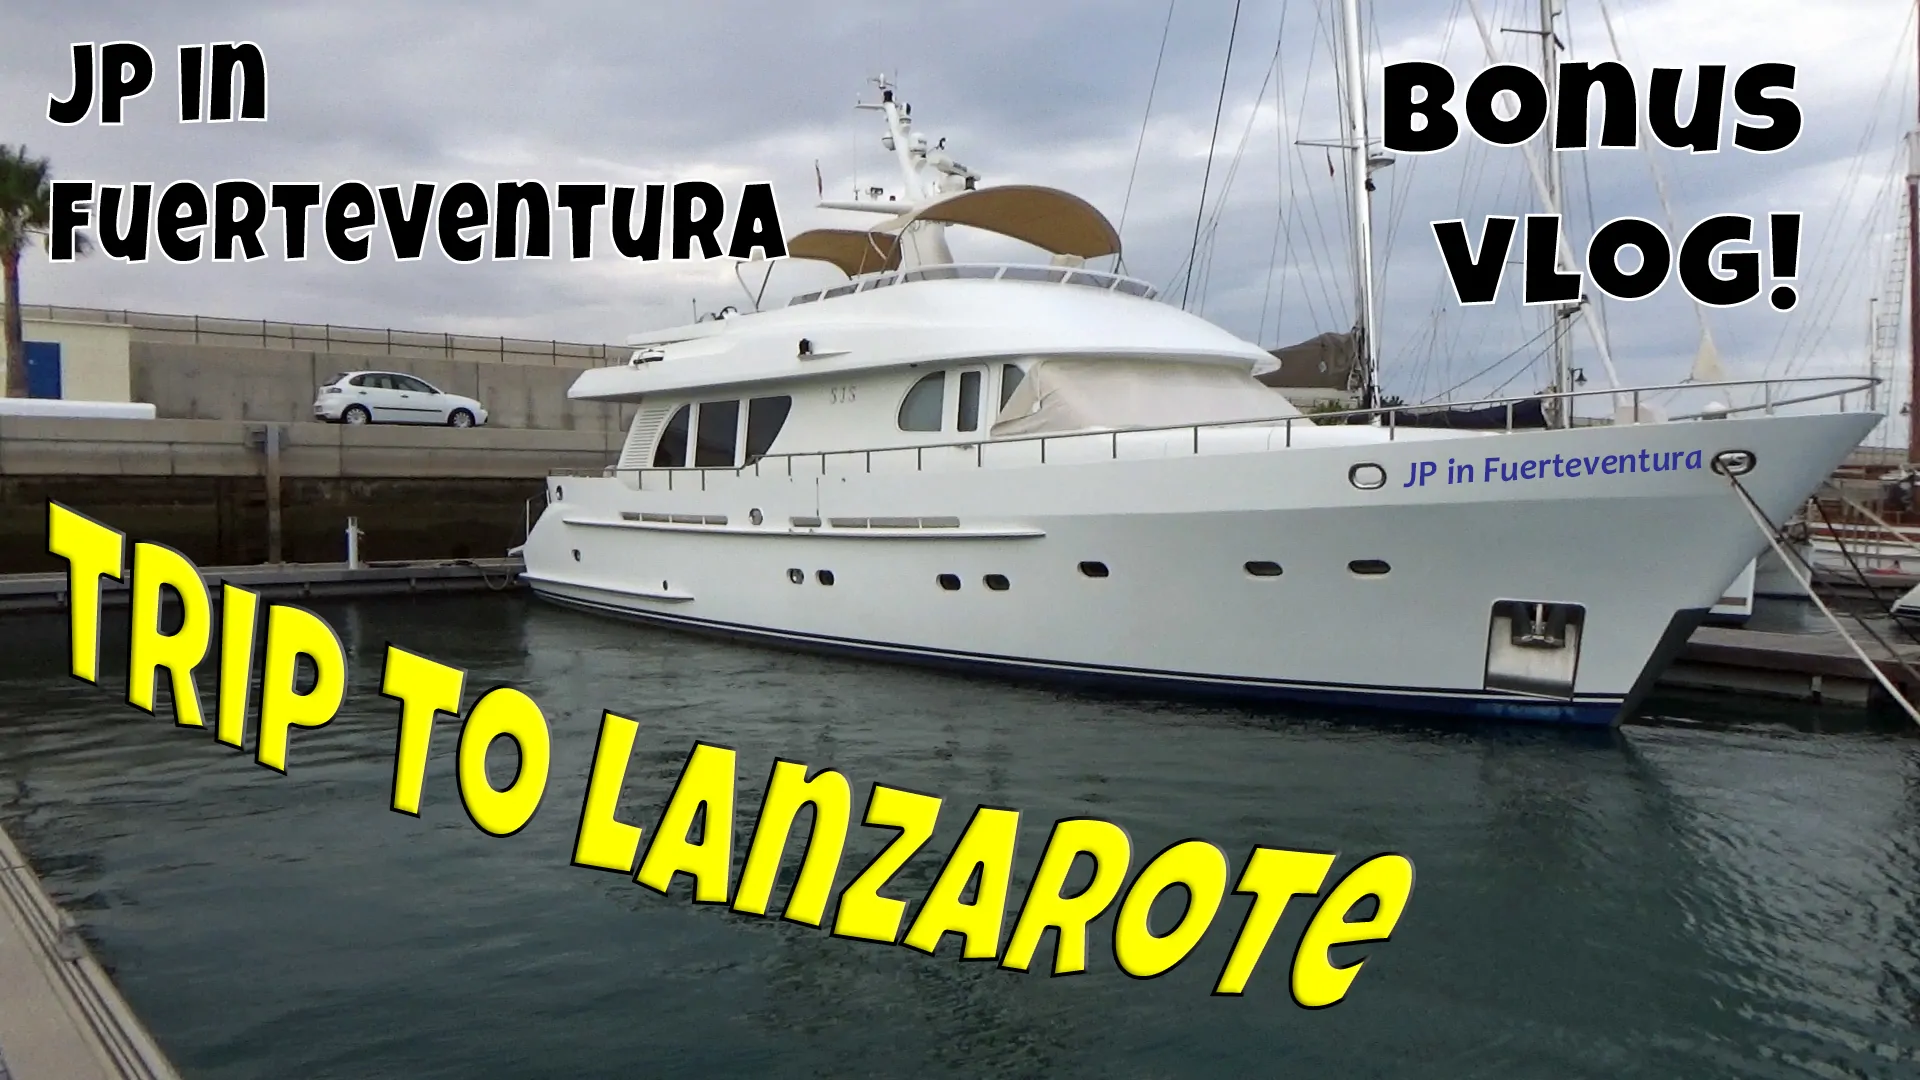 Our 2 Day Trip to Lanzarote – Bonus Vlog